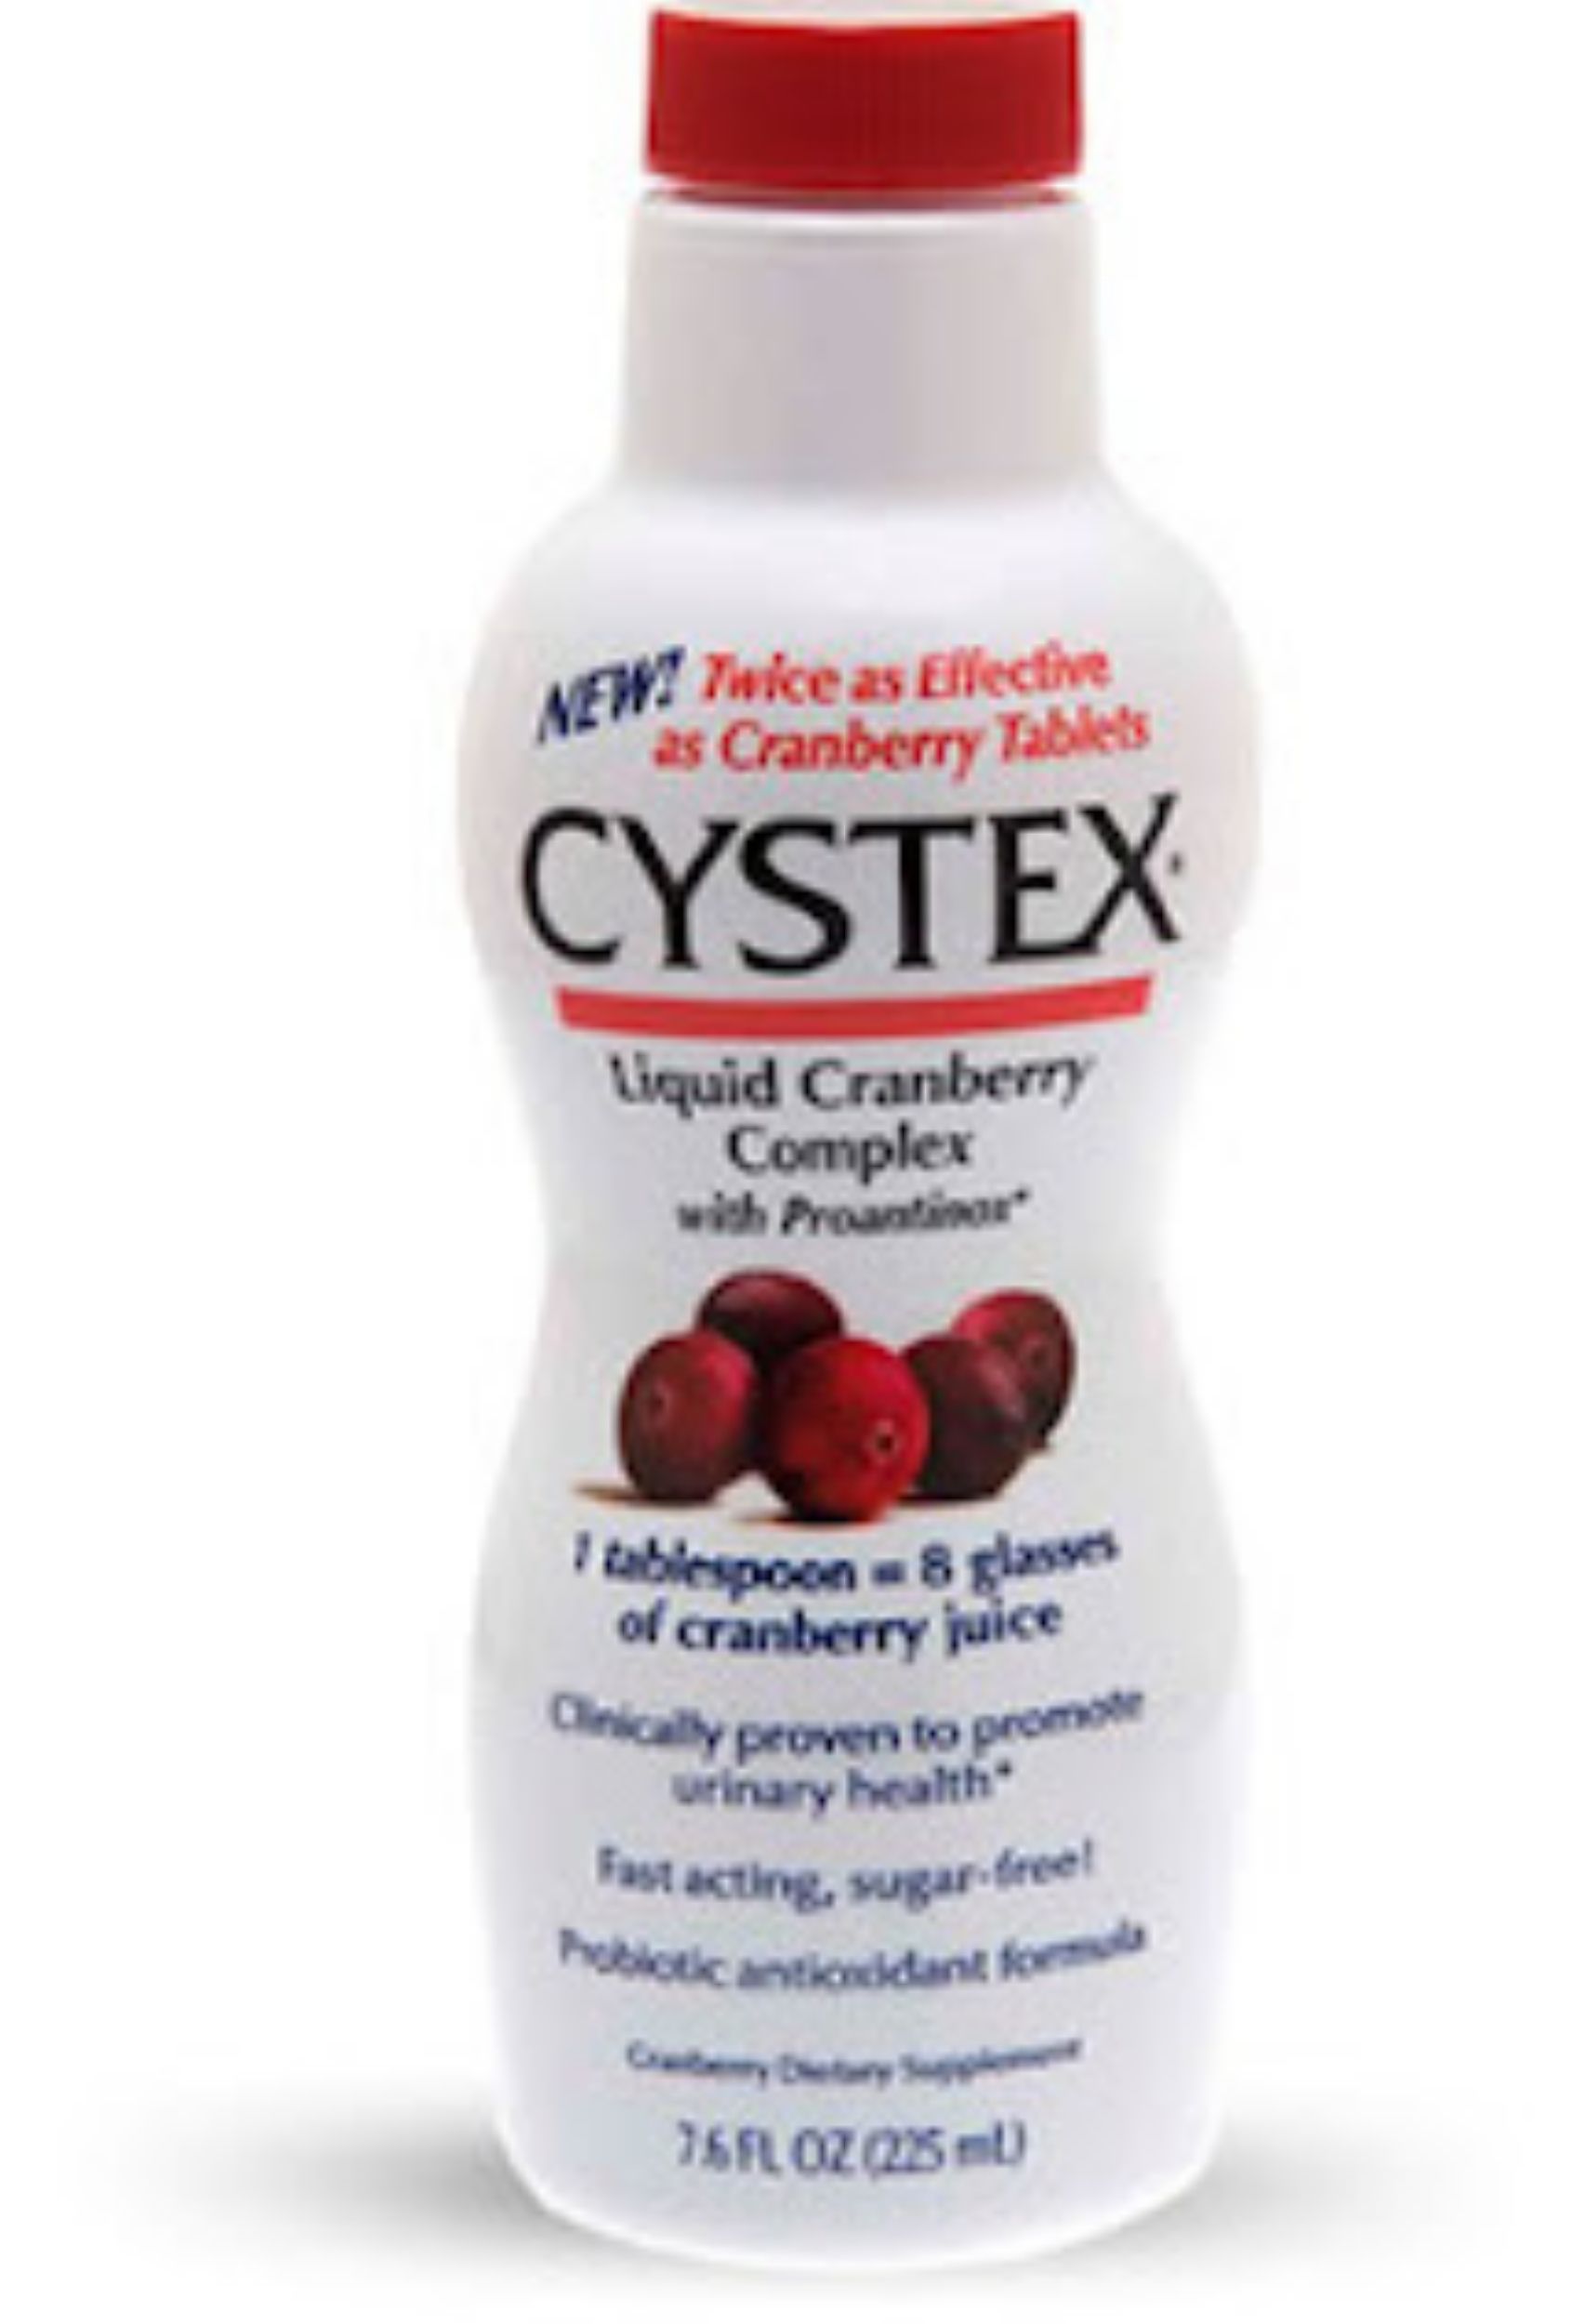 Cystex Liquid Cranberry Complex